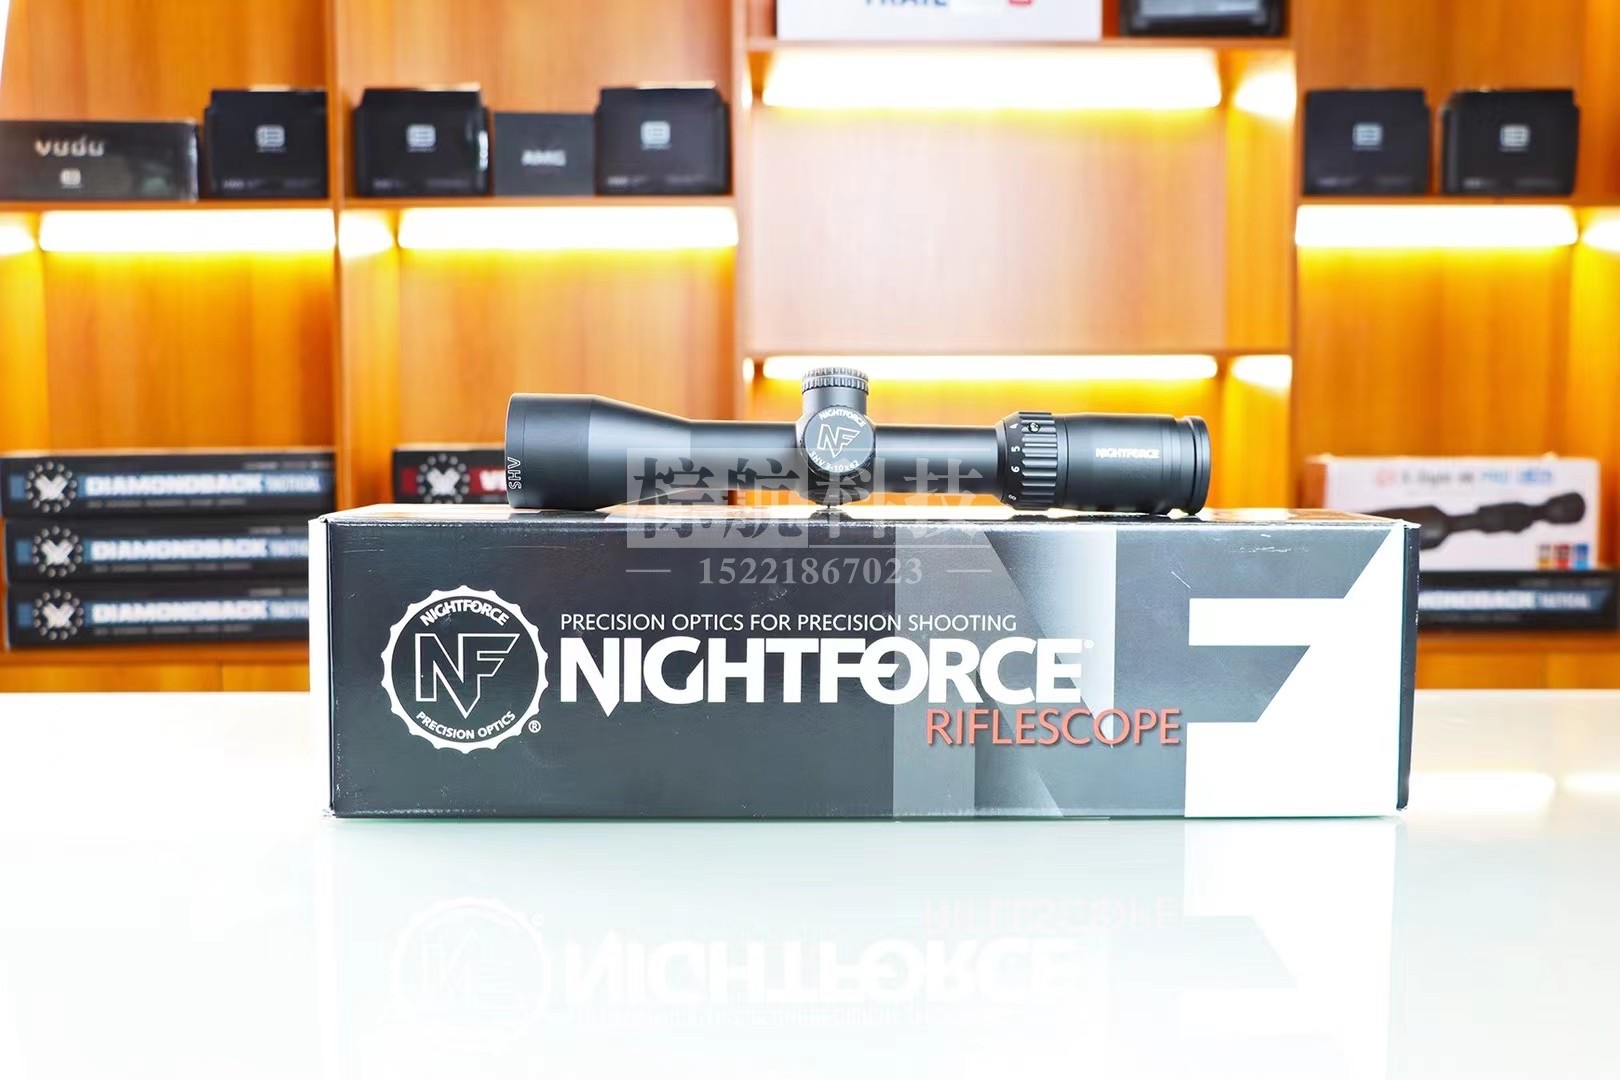 Nightforce SHV 3-10x42瞄准镜 产品及包装盒.jpg